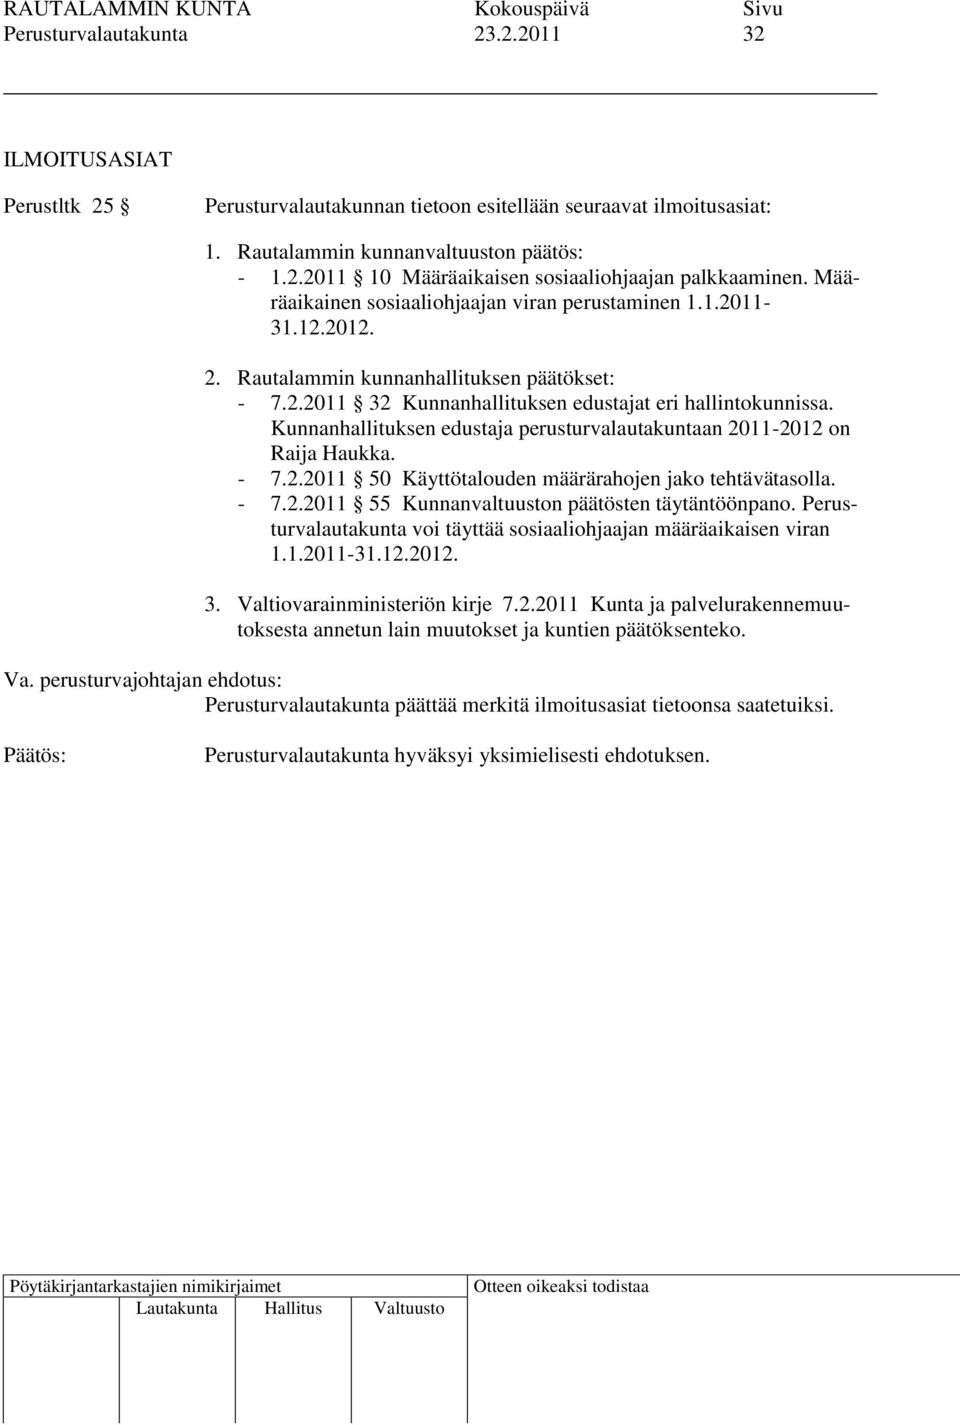 Kunnanhallituksen edustaja perusturvalautakuntaan 2011-2012 on Raija Haukka. - 7.2.2011 50 Käyttötalouden määrärahojen jako tehtävätasolla. - 7.2.2011 55 Kunnanvaltuuston päätösten täytäntöönpano.